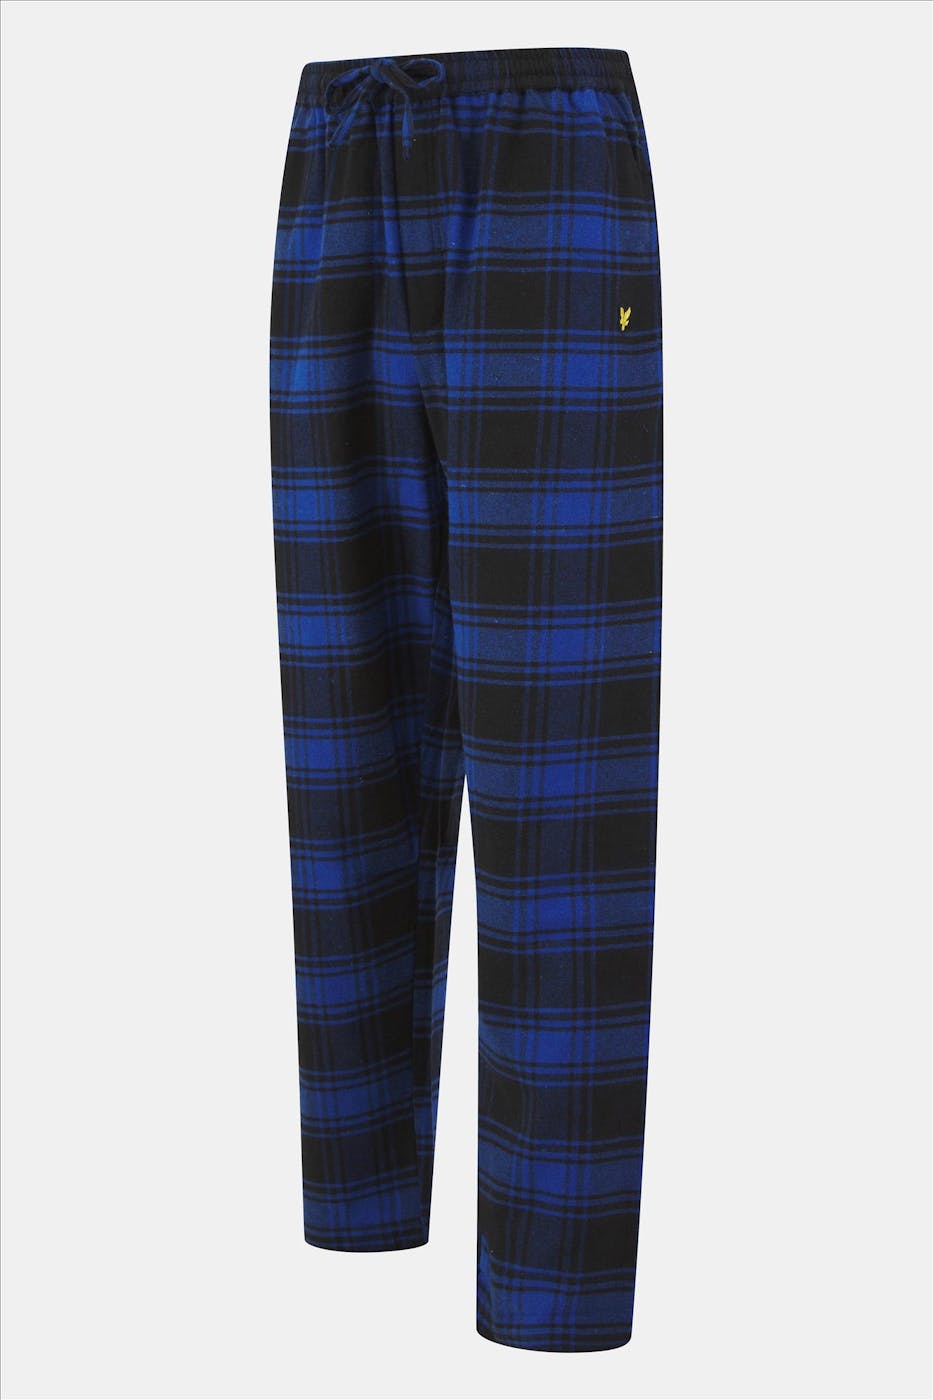 Lyle & Scott - Blauw-Zwarte Julian pyjama